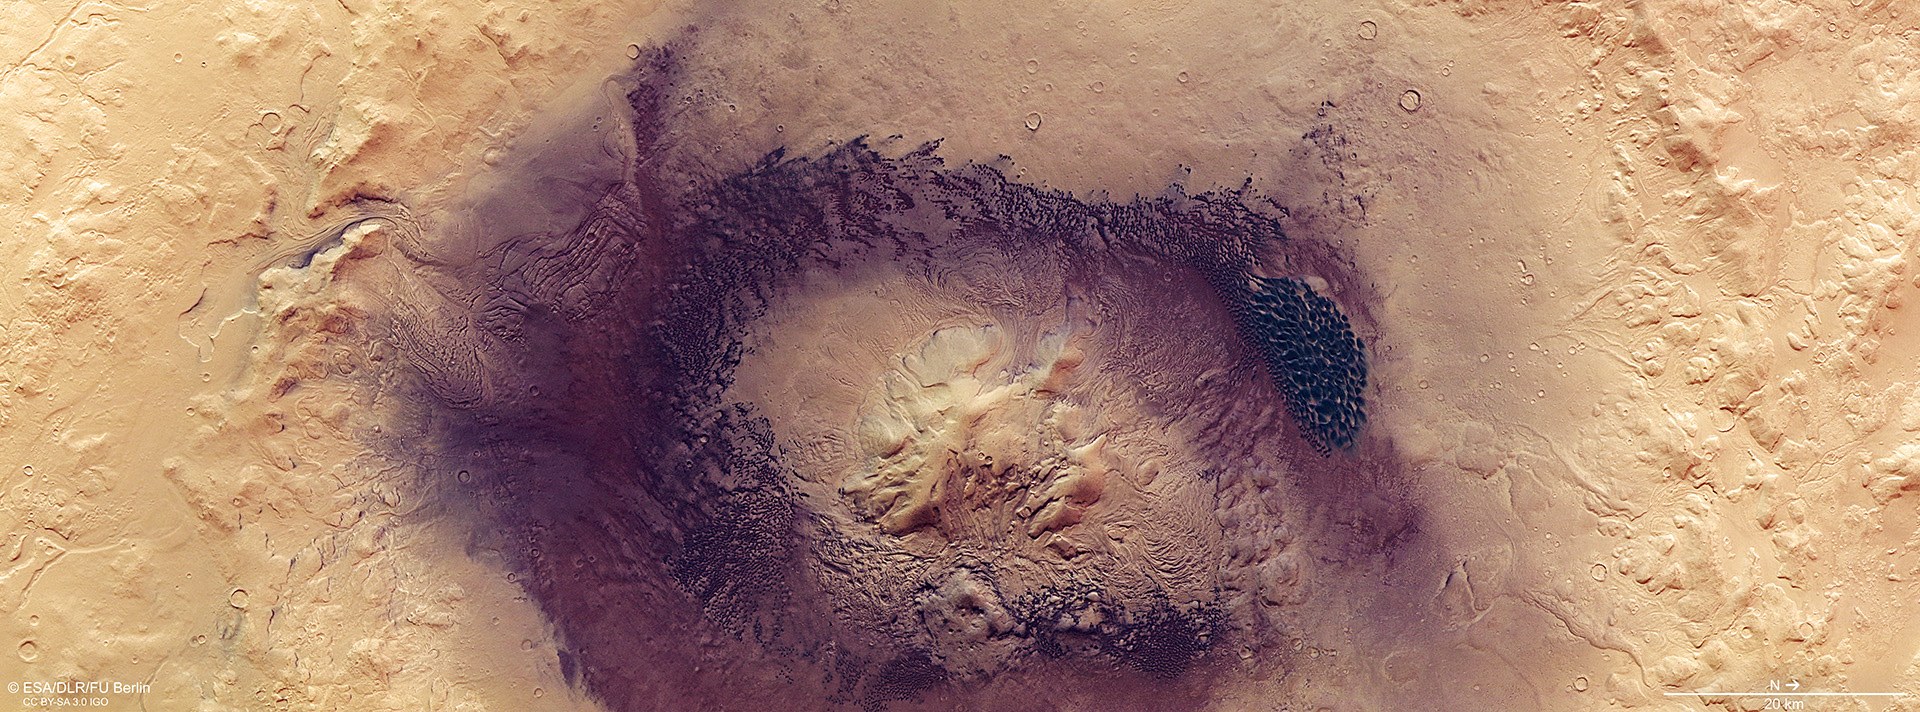 Blick auf den Einschlagskrater Moreux auf dem Mars